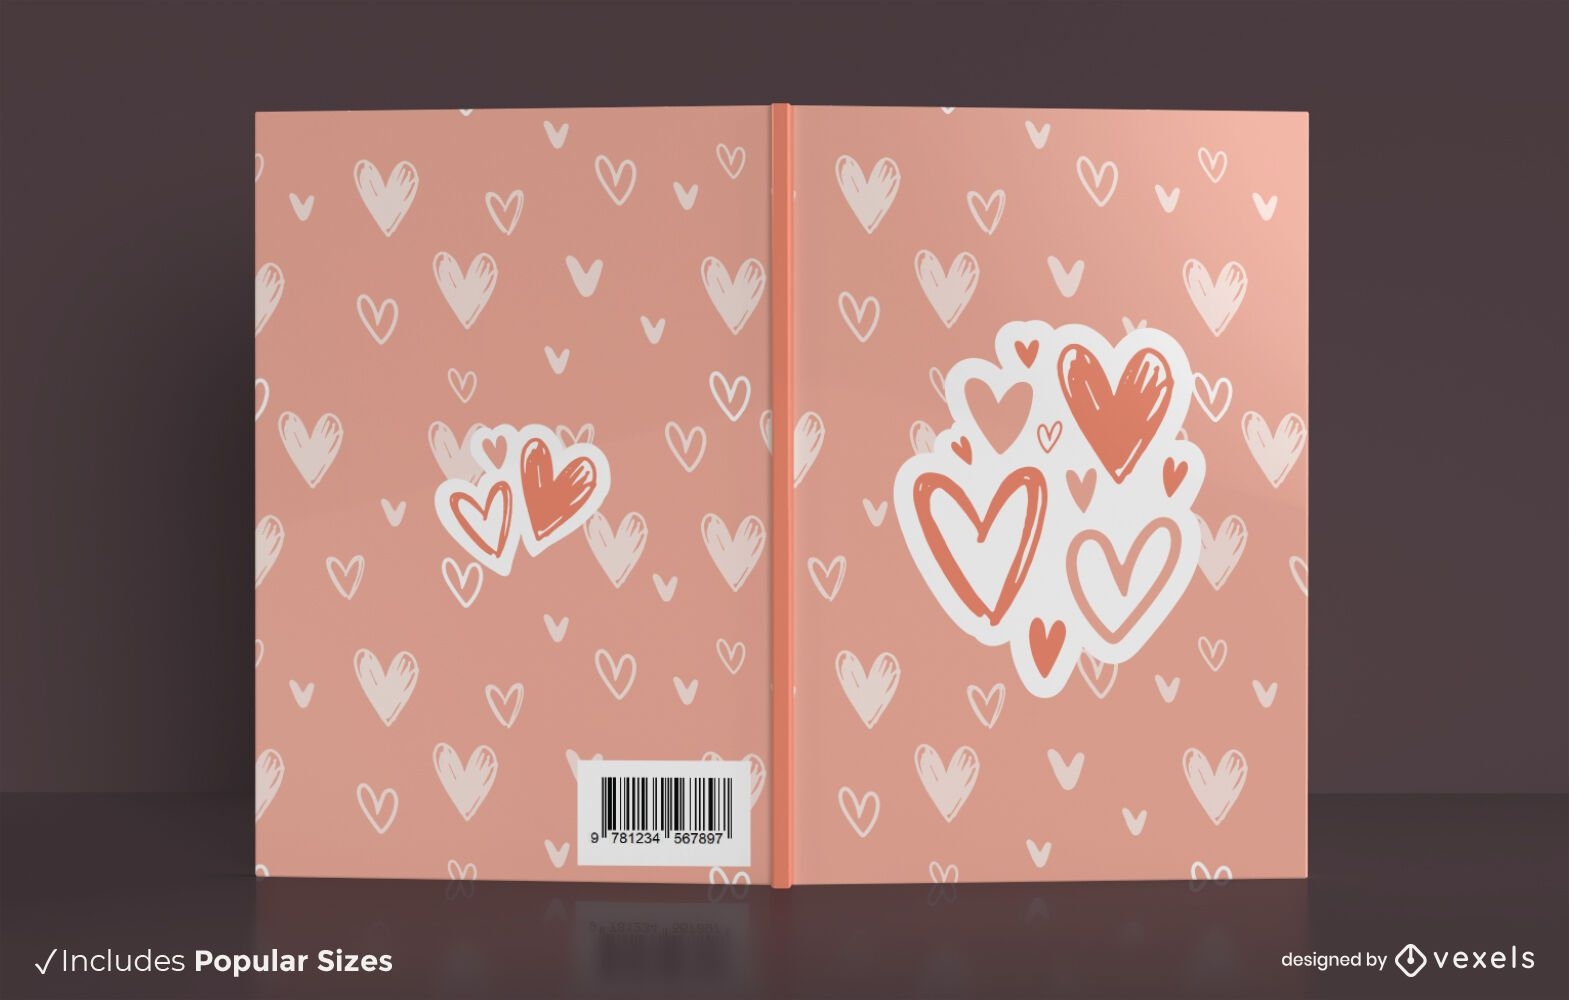 Love hearts book cover design